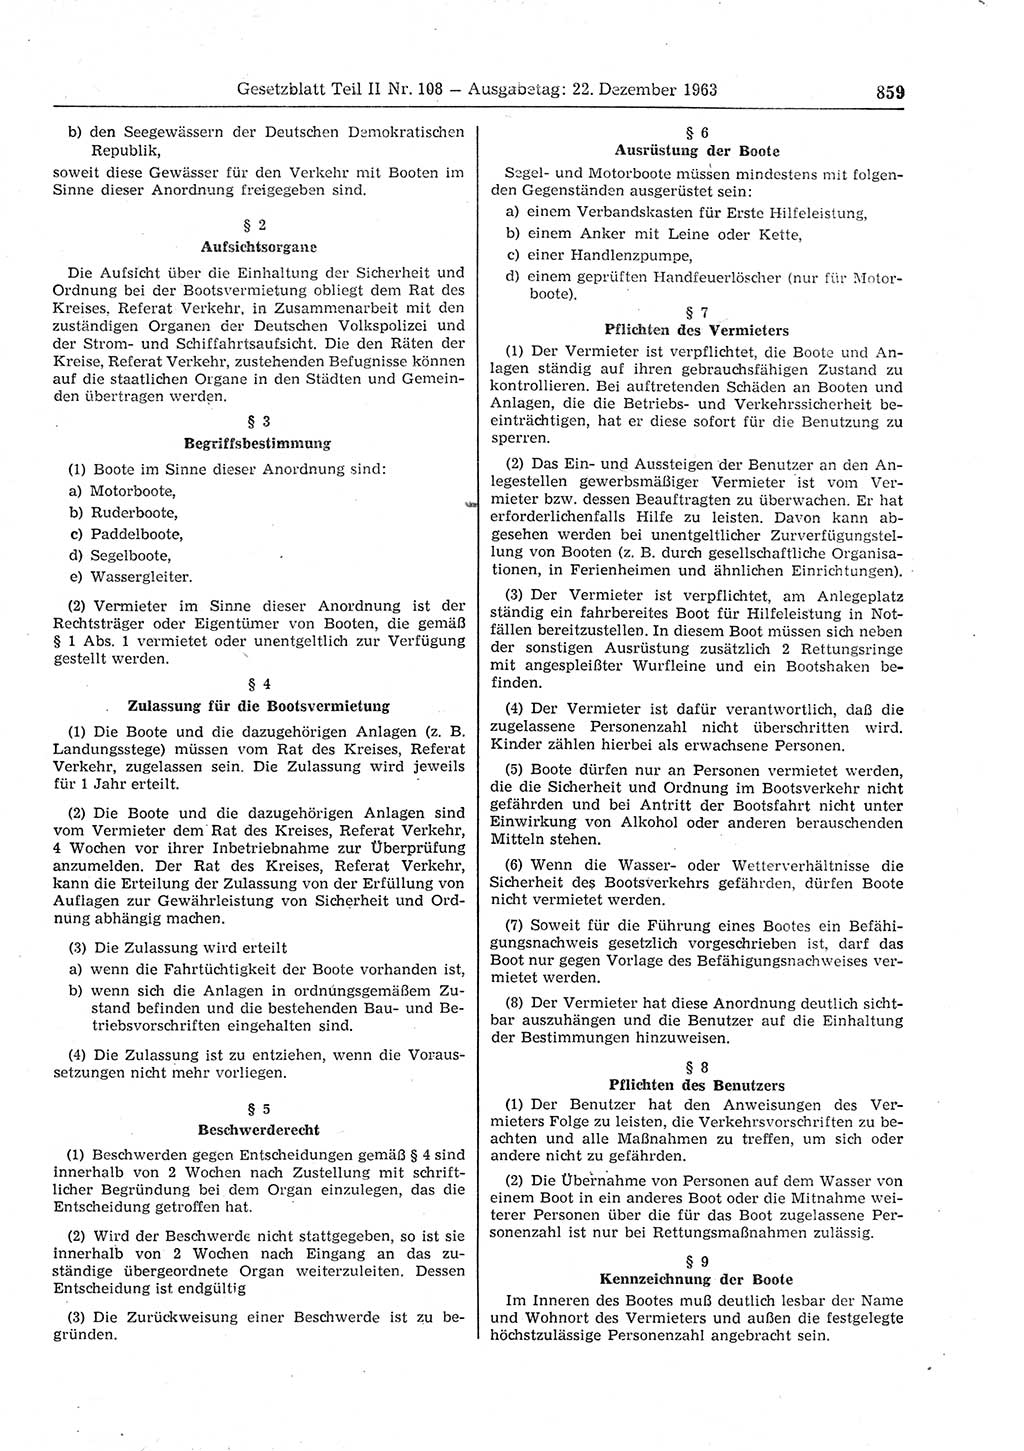 Gesetzblatt (GBl.) der Deutschen Demokratischen Republik (DDR) Teil ⅠⅠ 1963, Seite 859 (GBl. DDR ⅠⅠ 1963, S. 859)